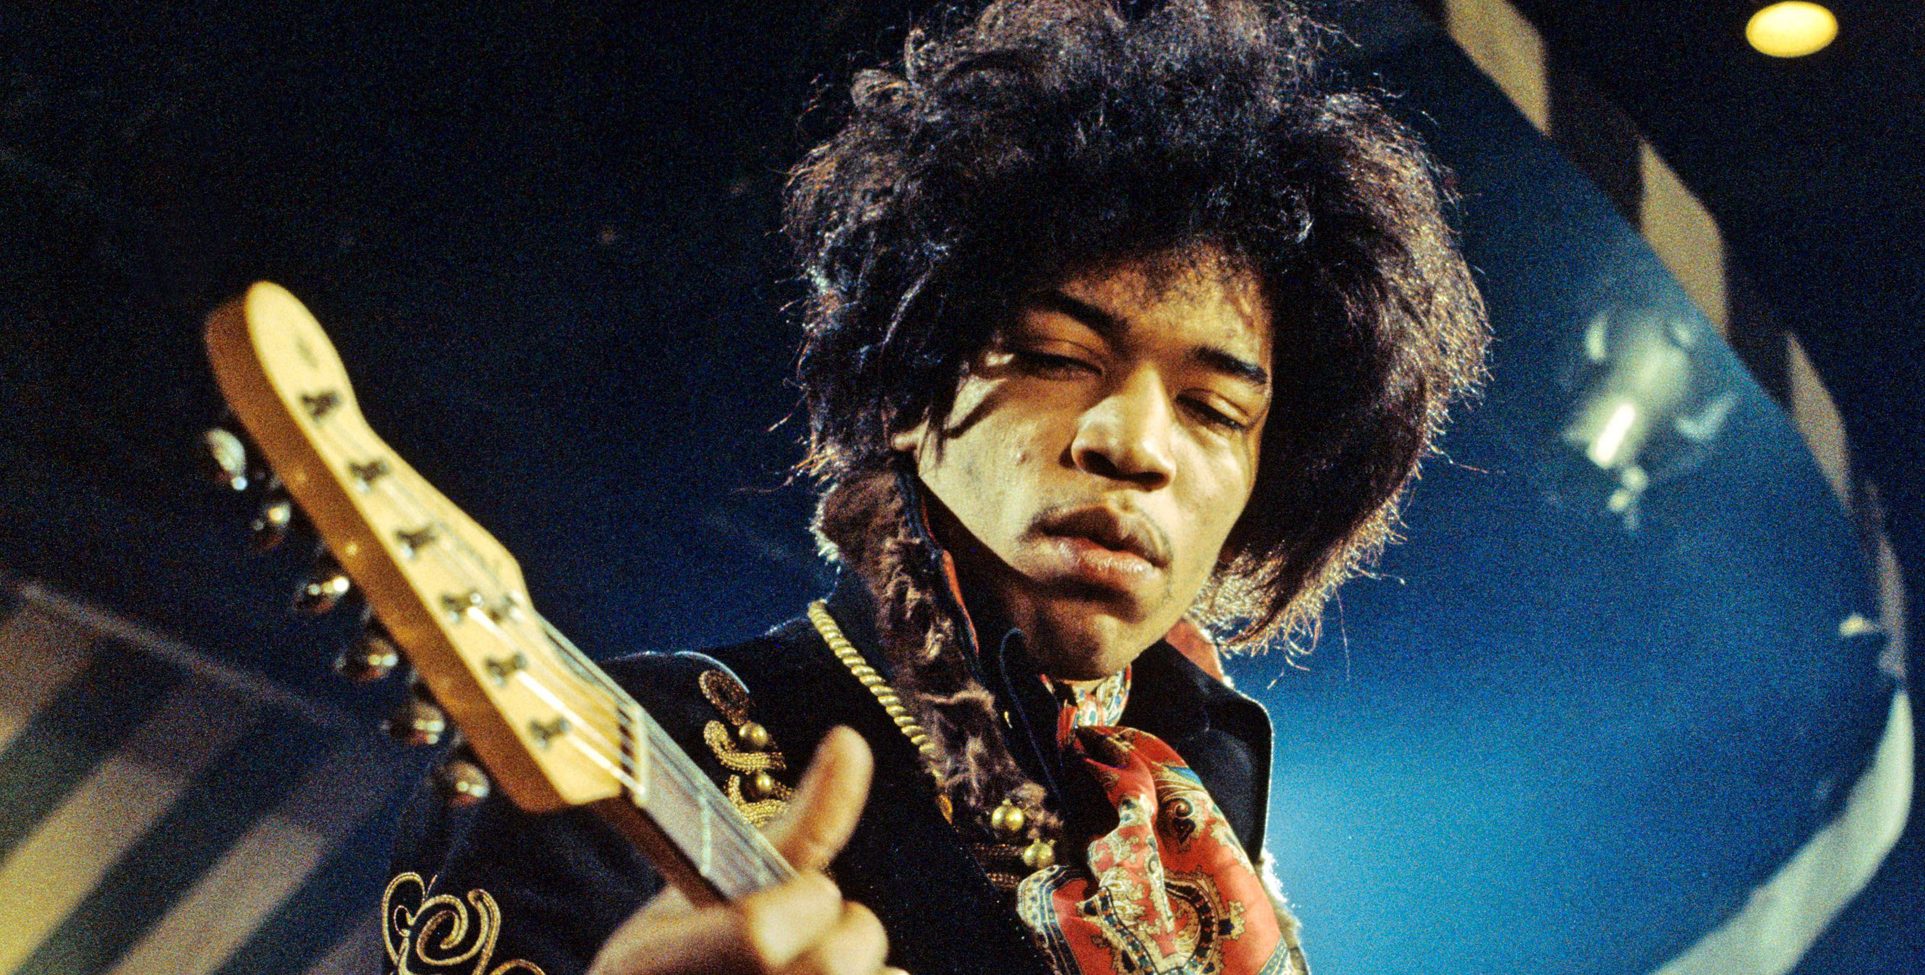 Una oficina de correo ¿revive a Jimi Hendrix?